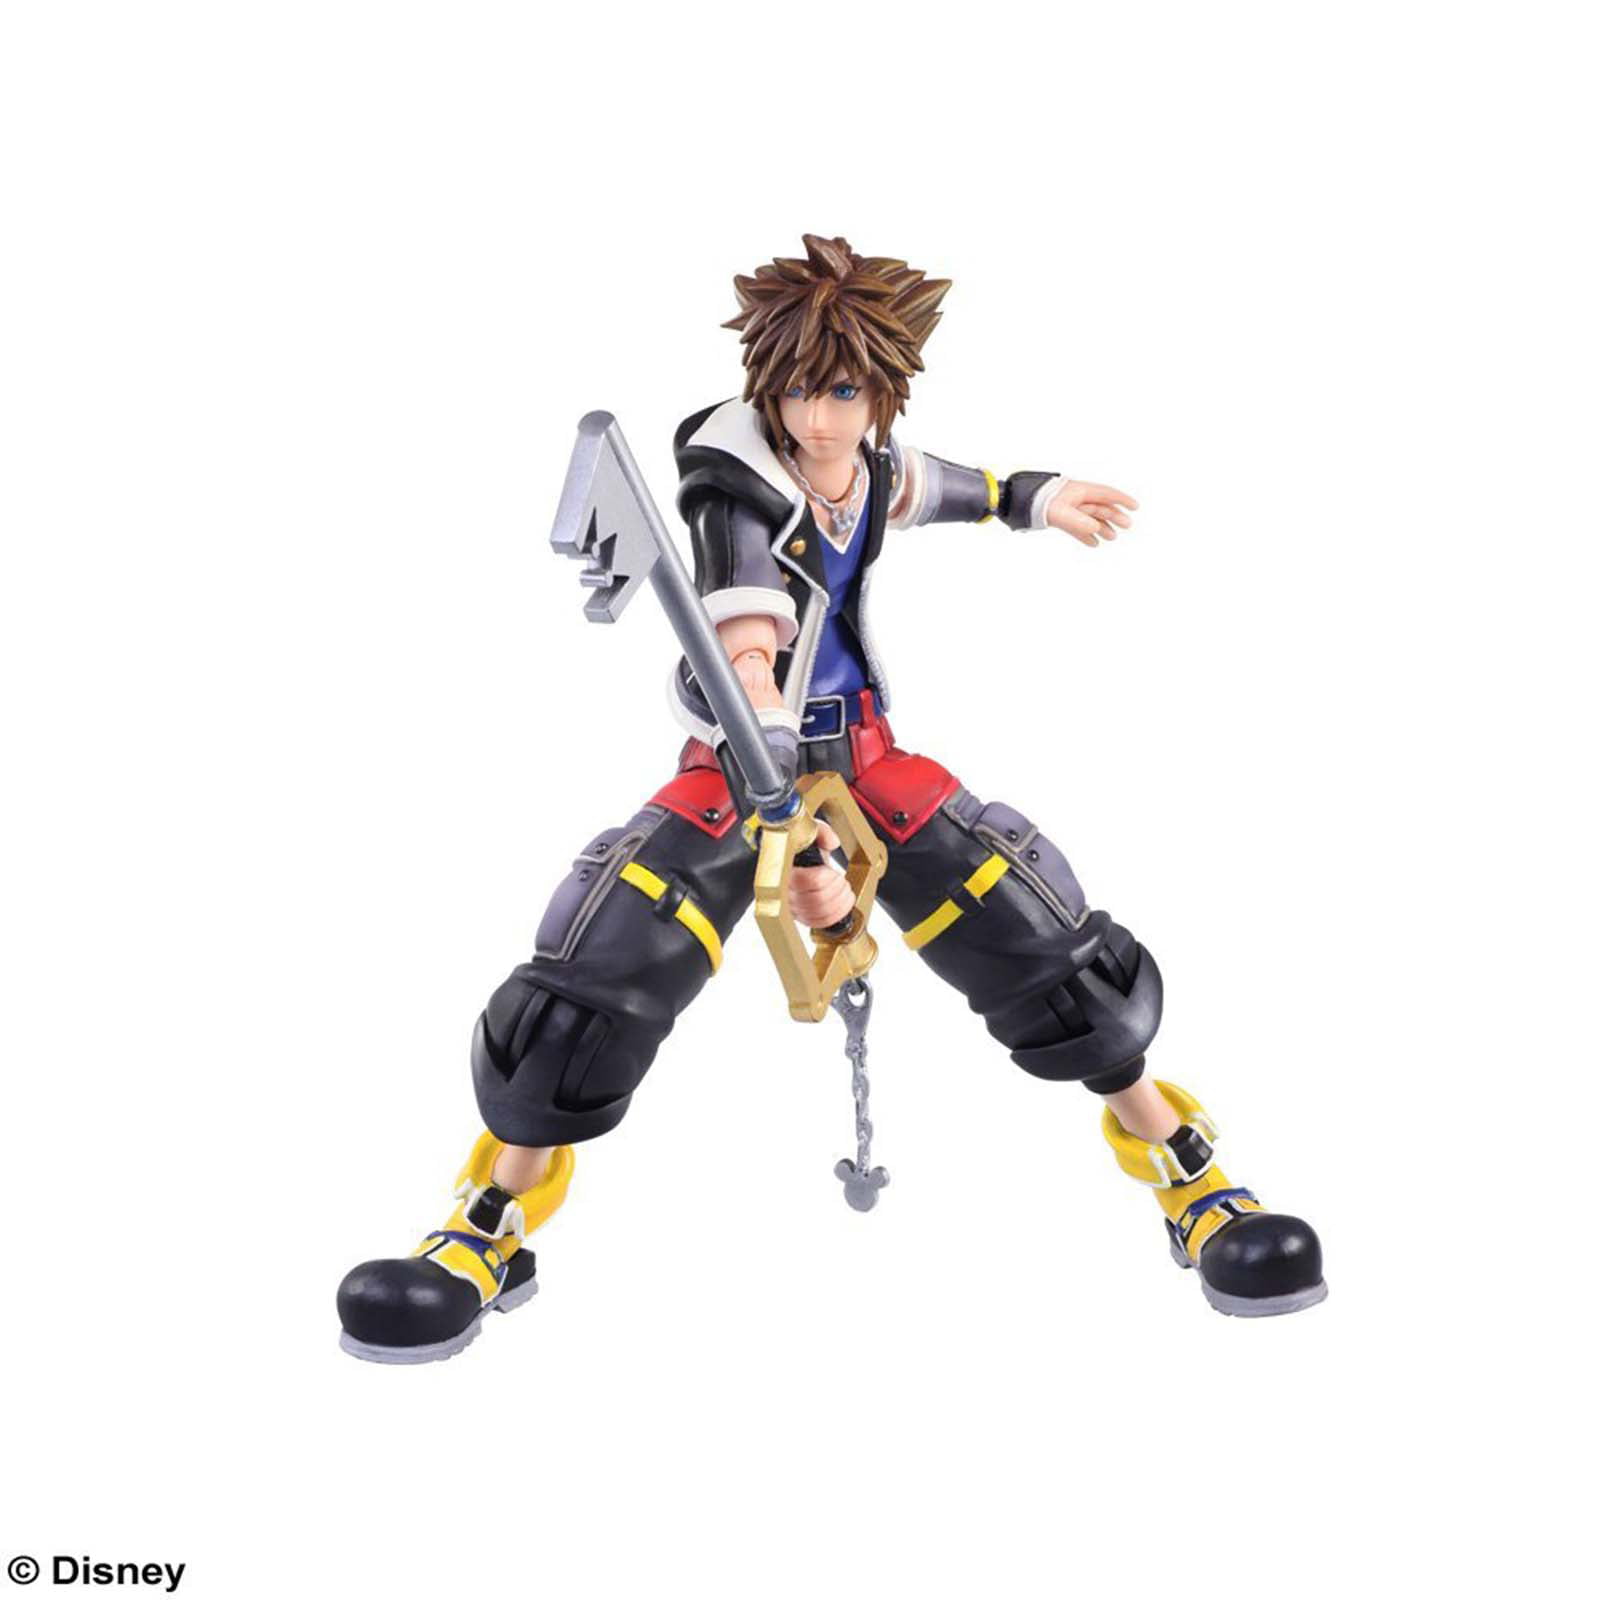 Version 2 BRING ARTS Action Figure Sora Kingdom Hearts III 